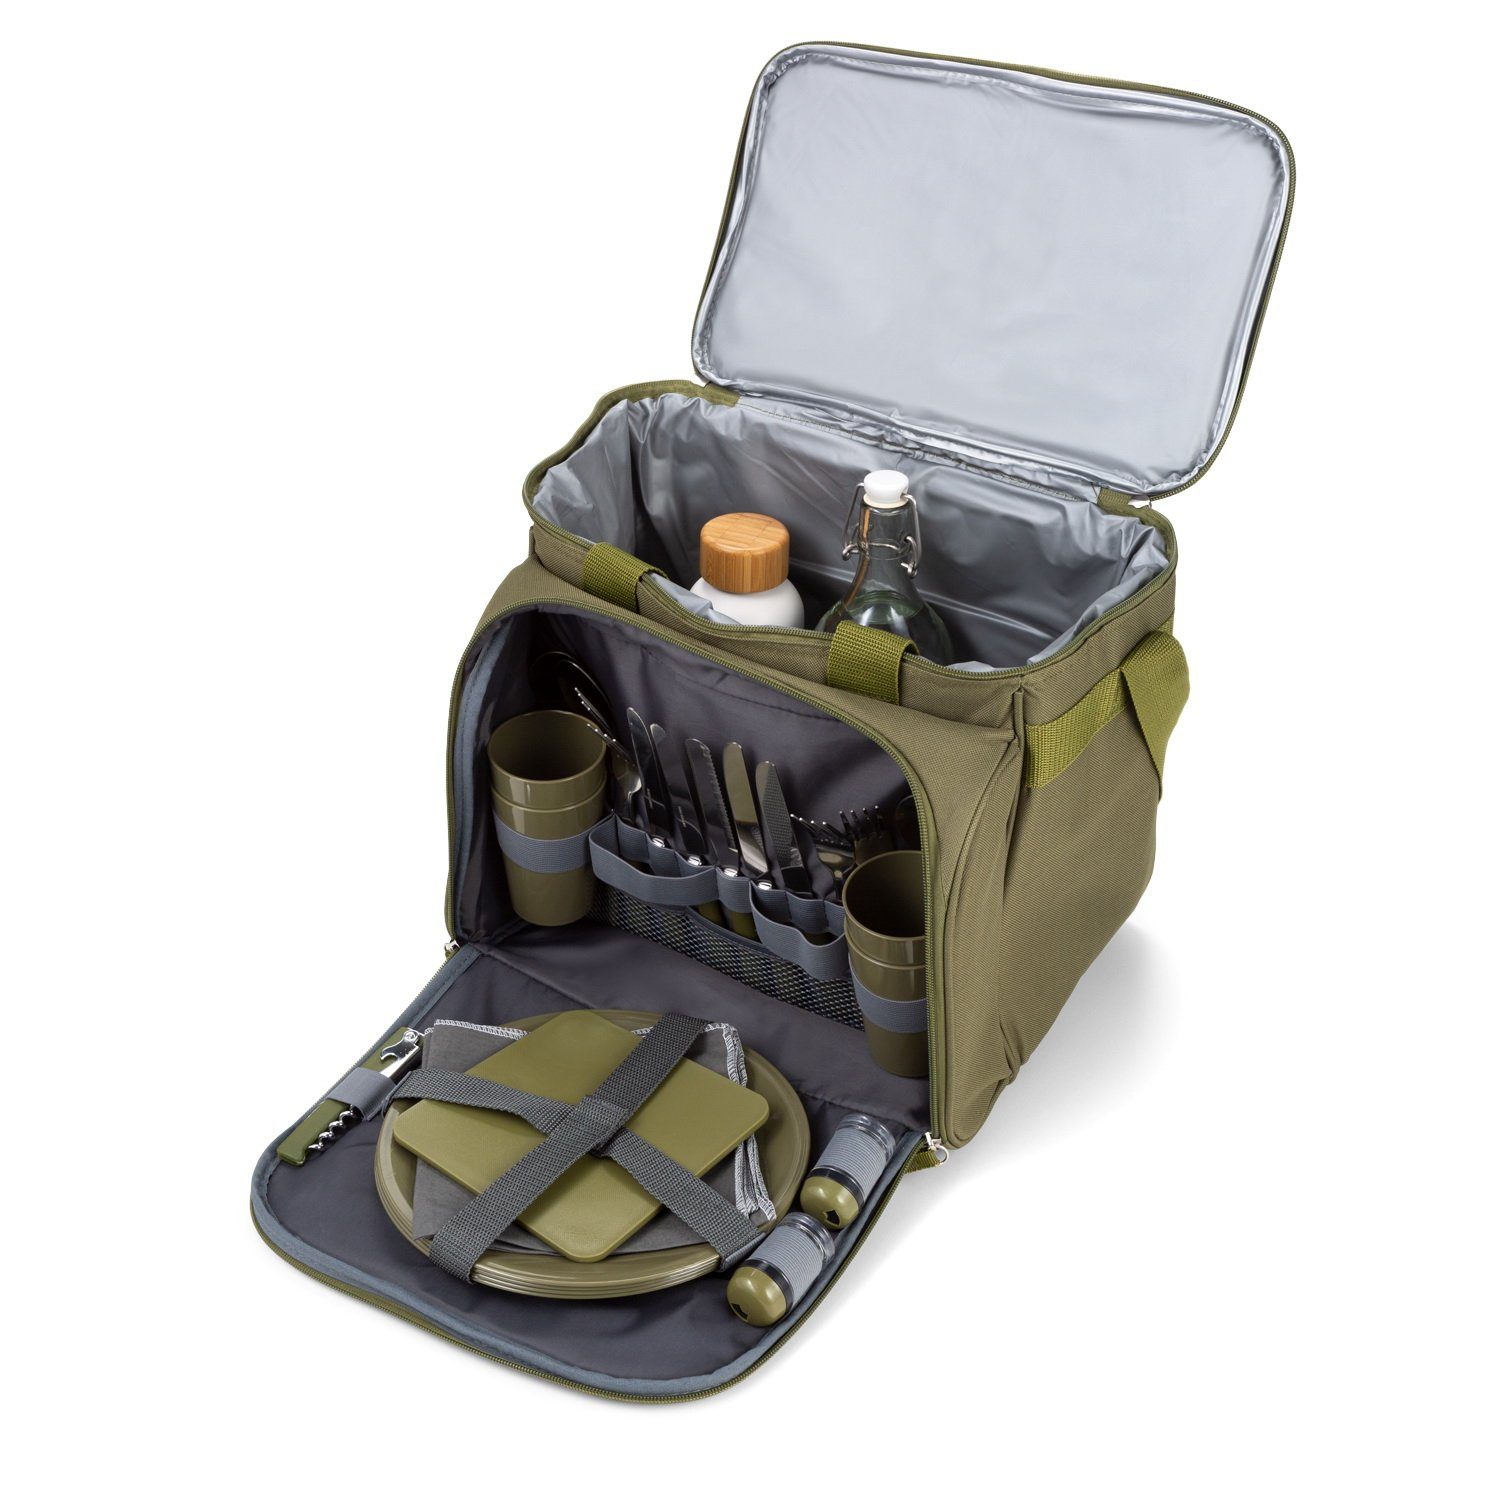 Zubehör für Commando-Industries 4 Picknickkorb mit Personen Picknick Kühltasche